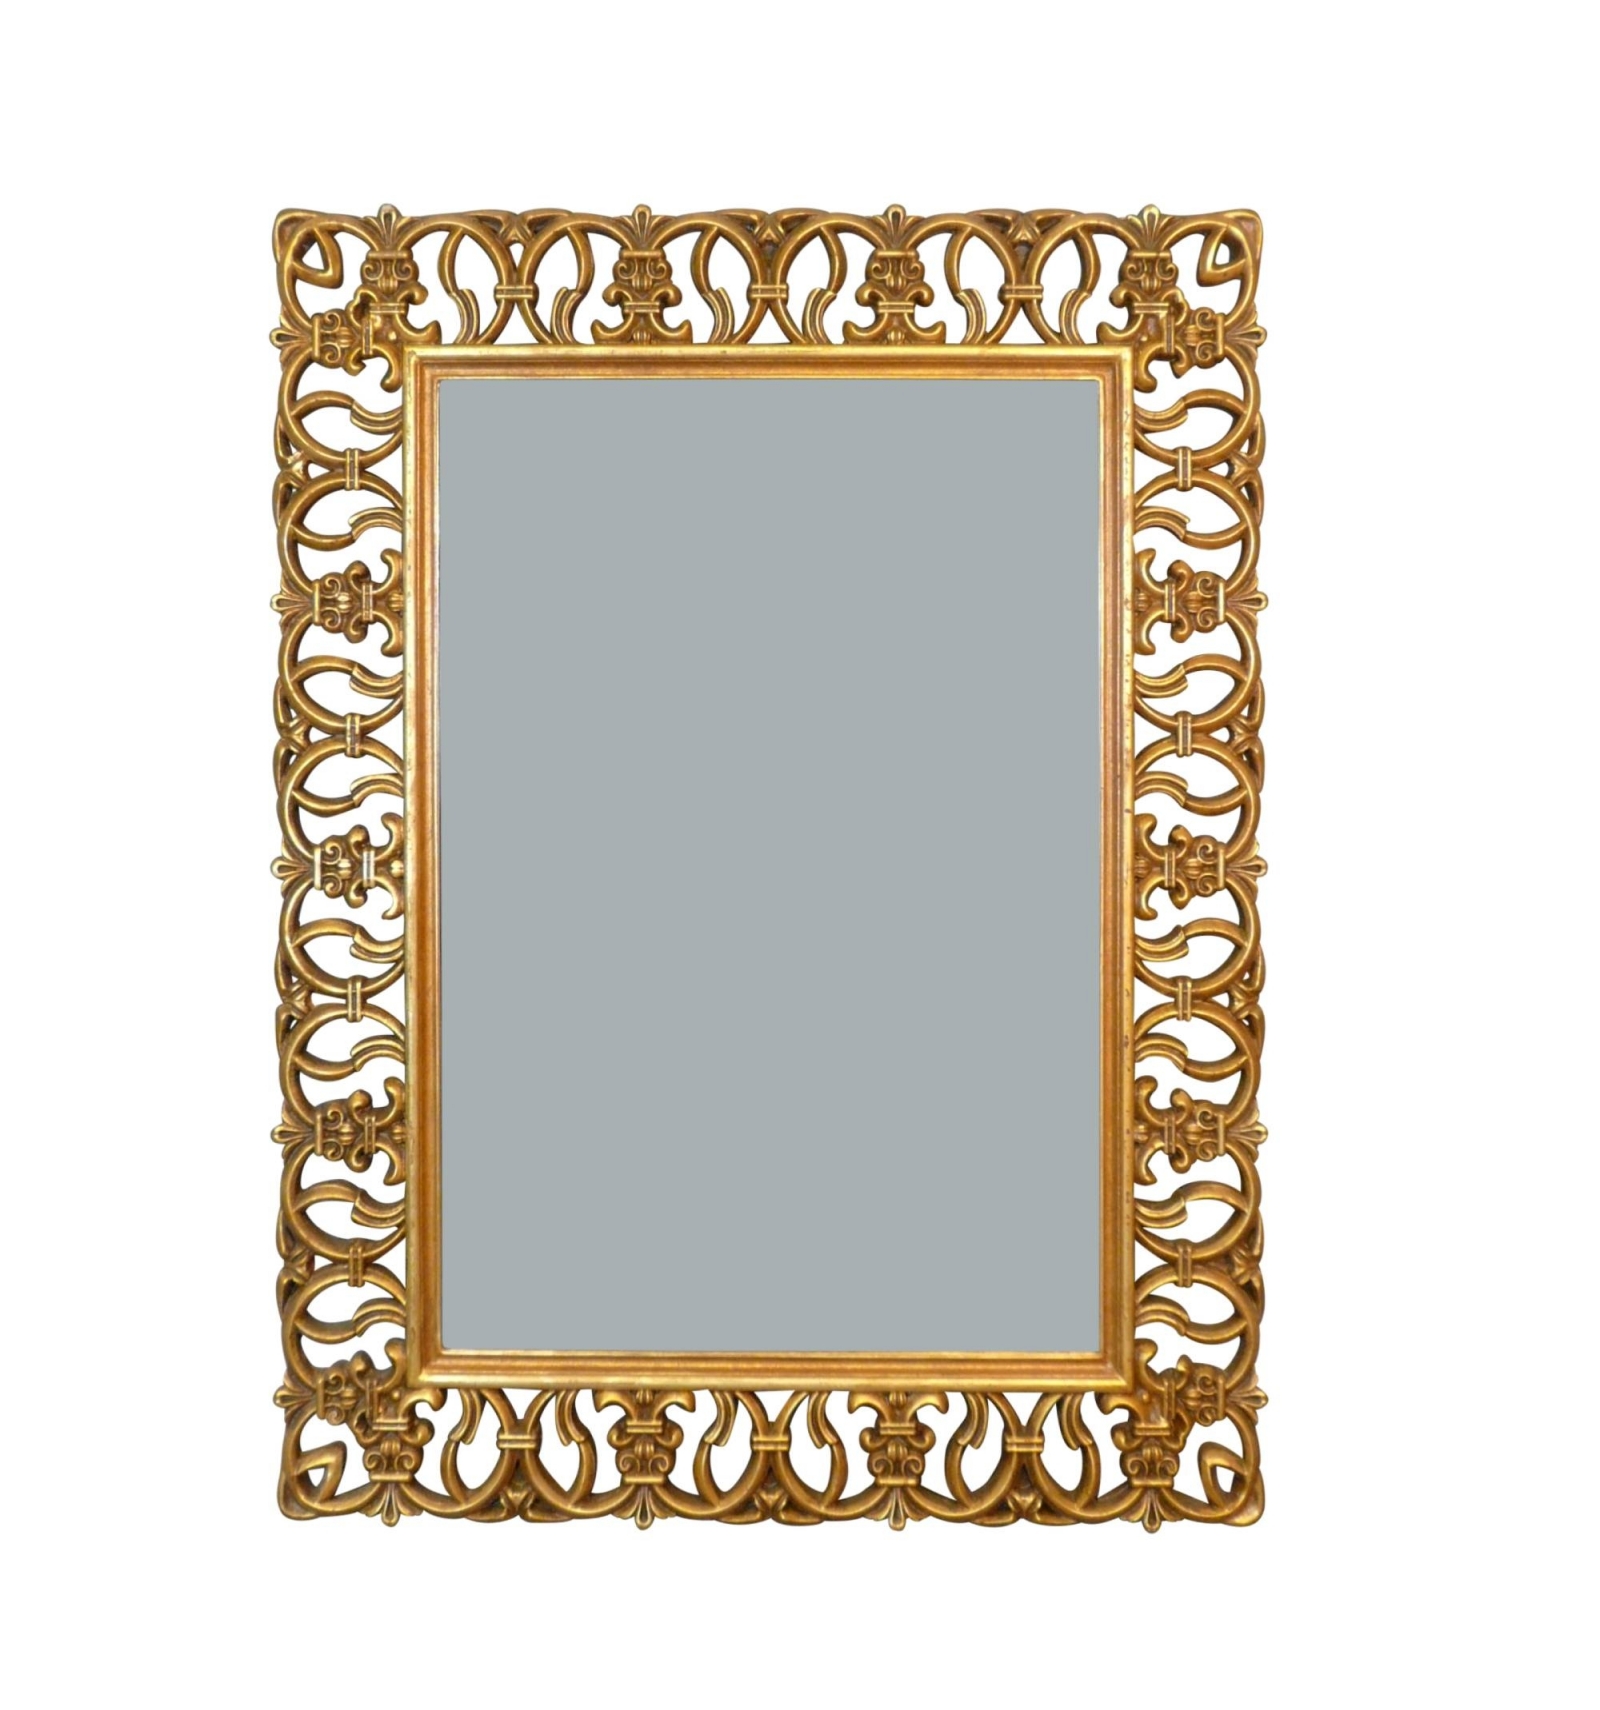 Buiten publiek trimmen Barok spiegel in opengewerkt verguld hout - H: 120 cm - Barok meubelen